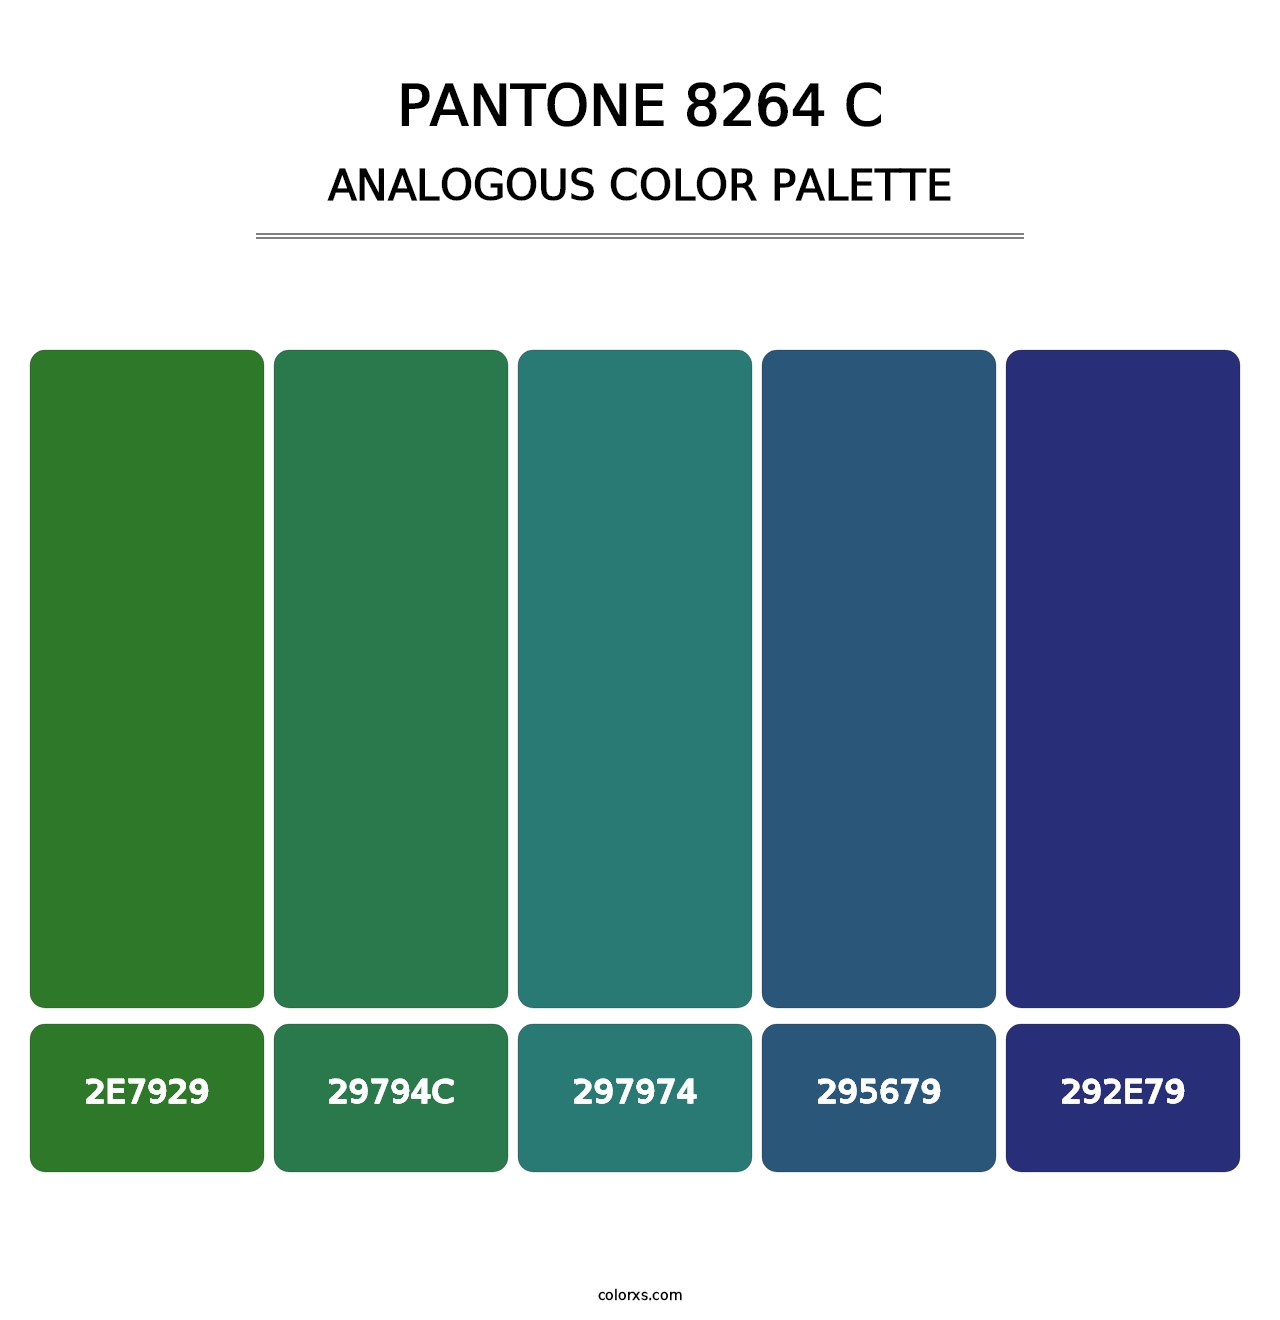 PANTONE 8264 C - Analogous Color Palette